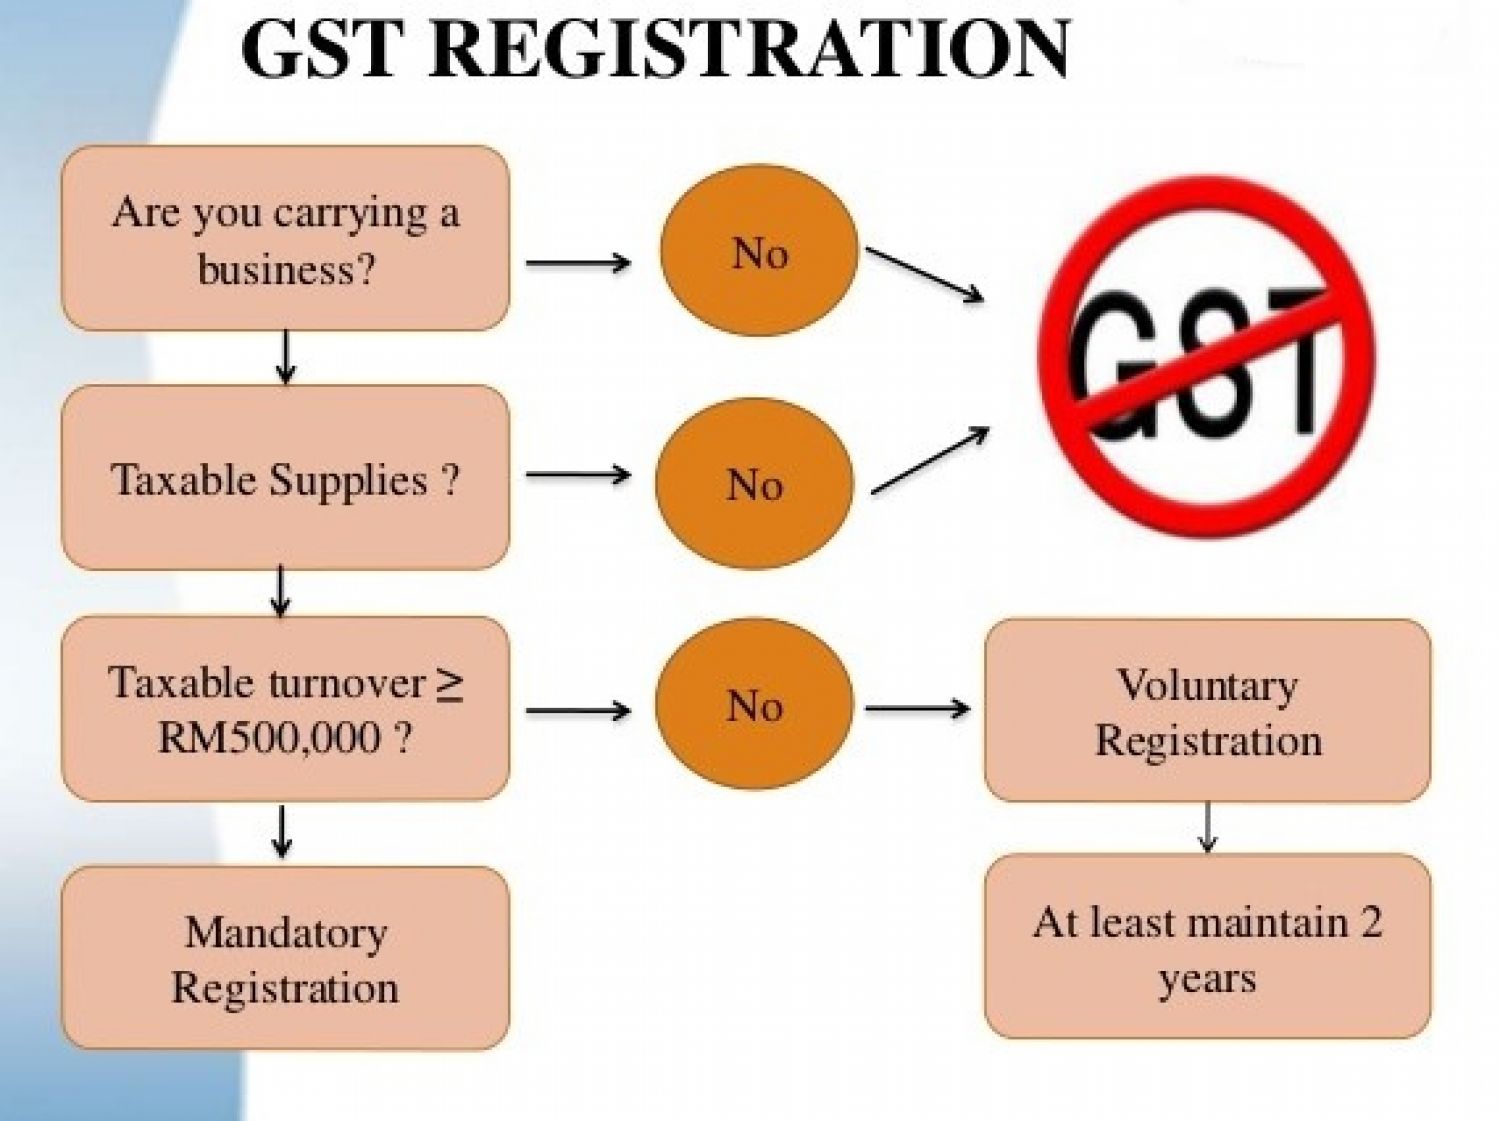 Compulsory GST registration